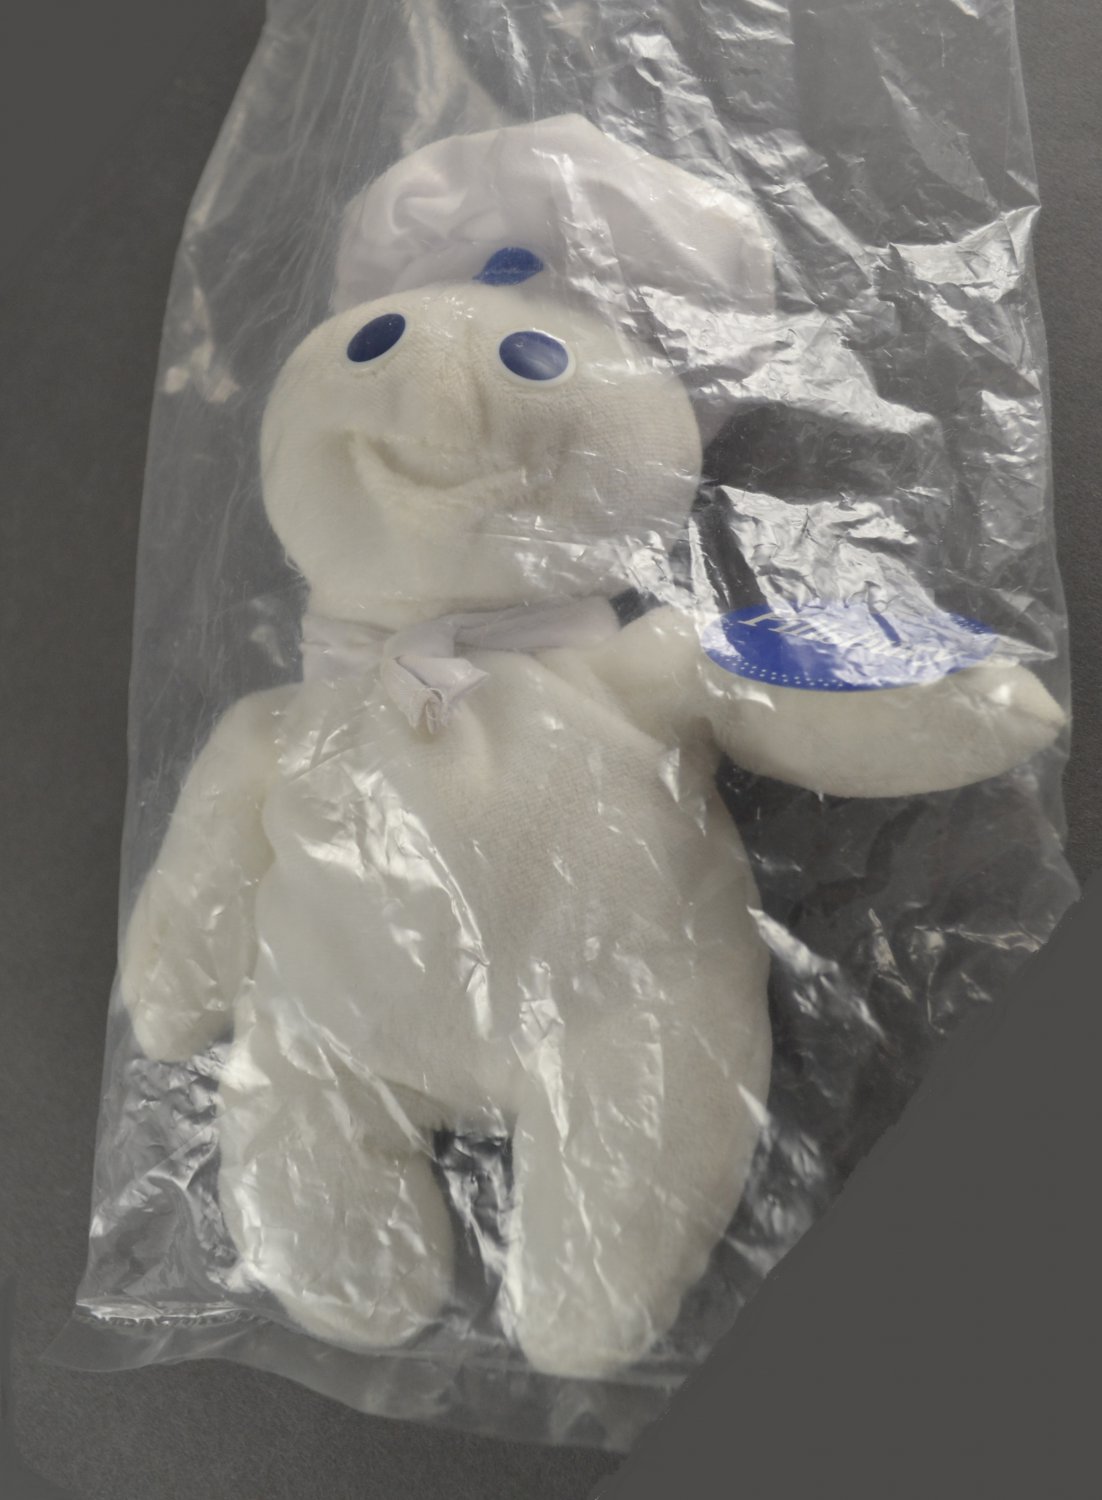 Pillsbury Doughboy 1997 Bean Bag Collectible Toy